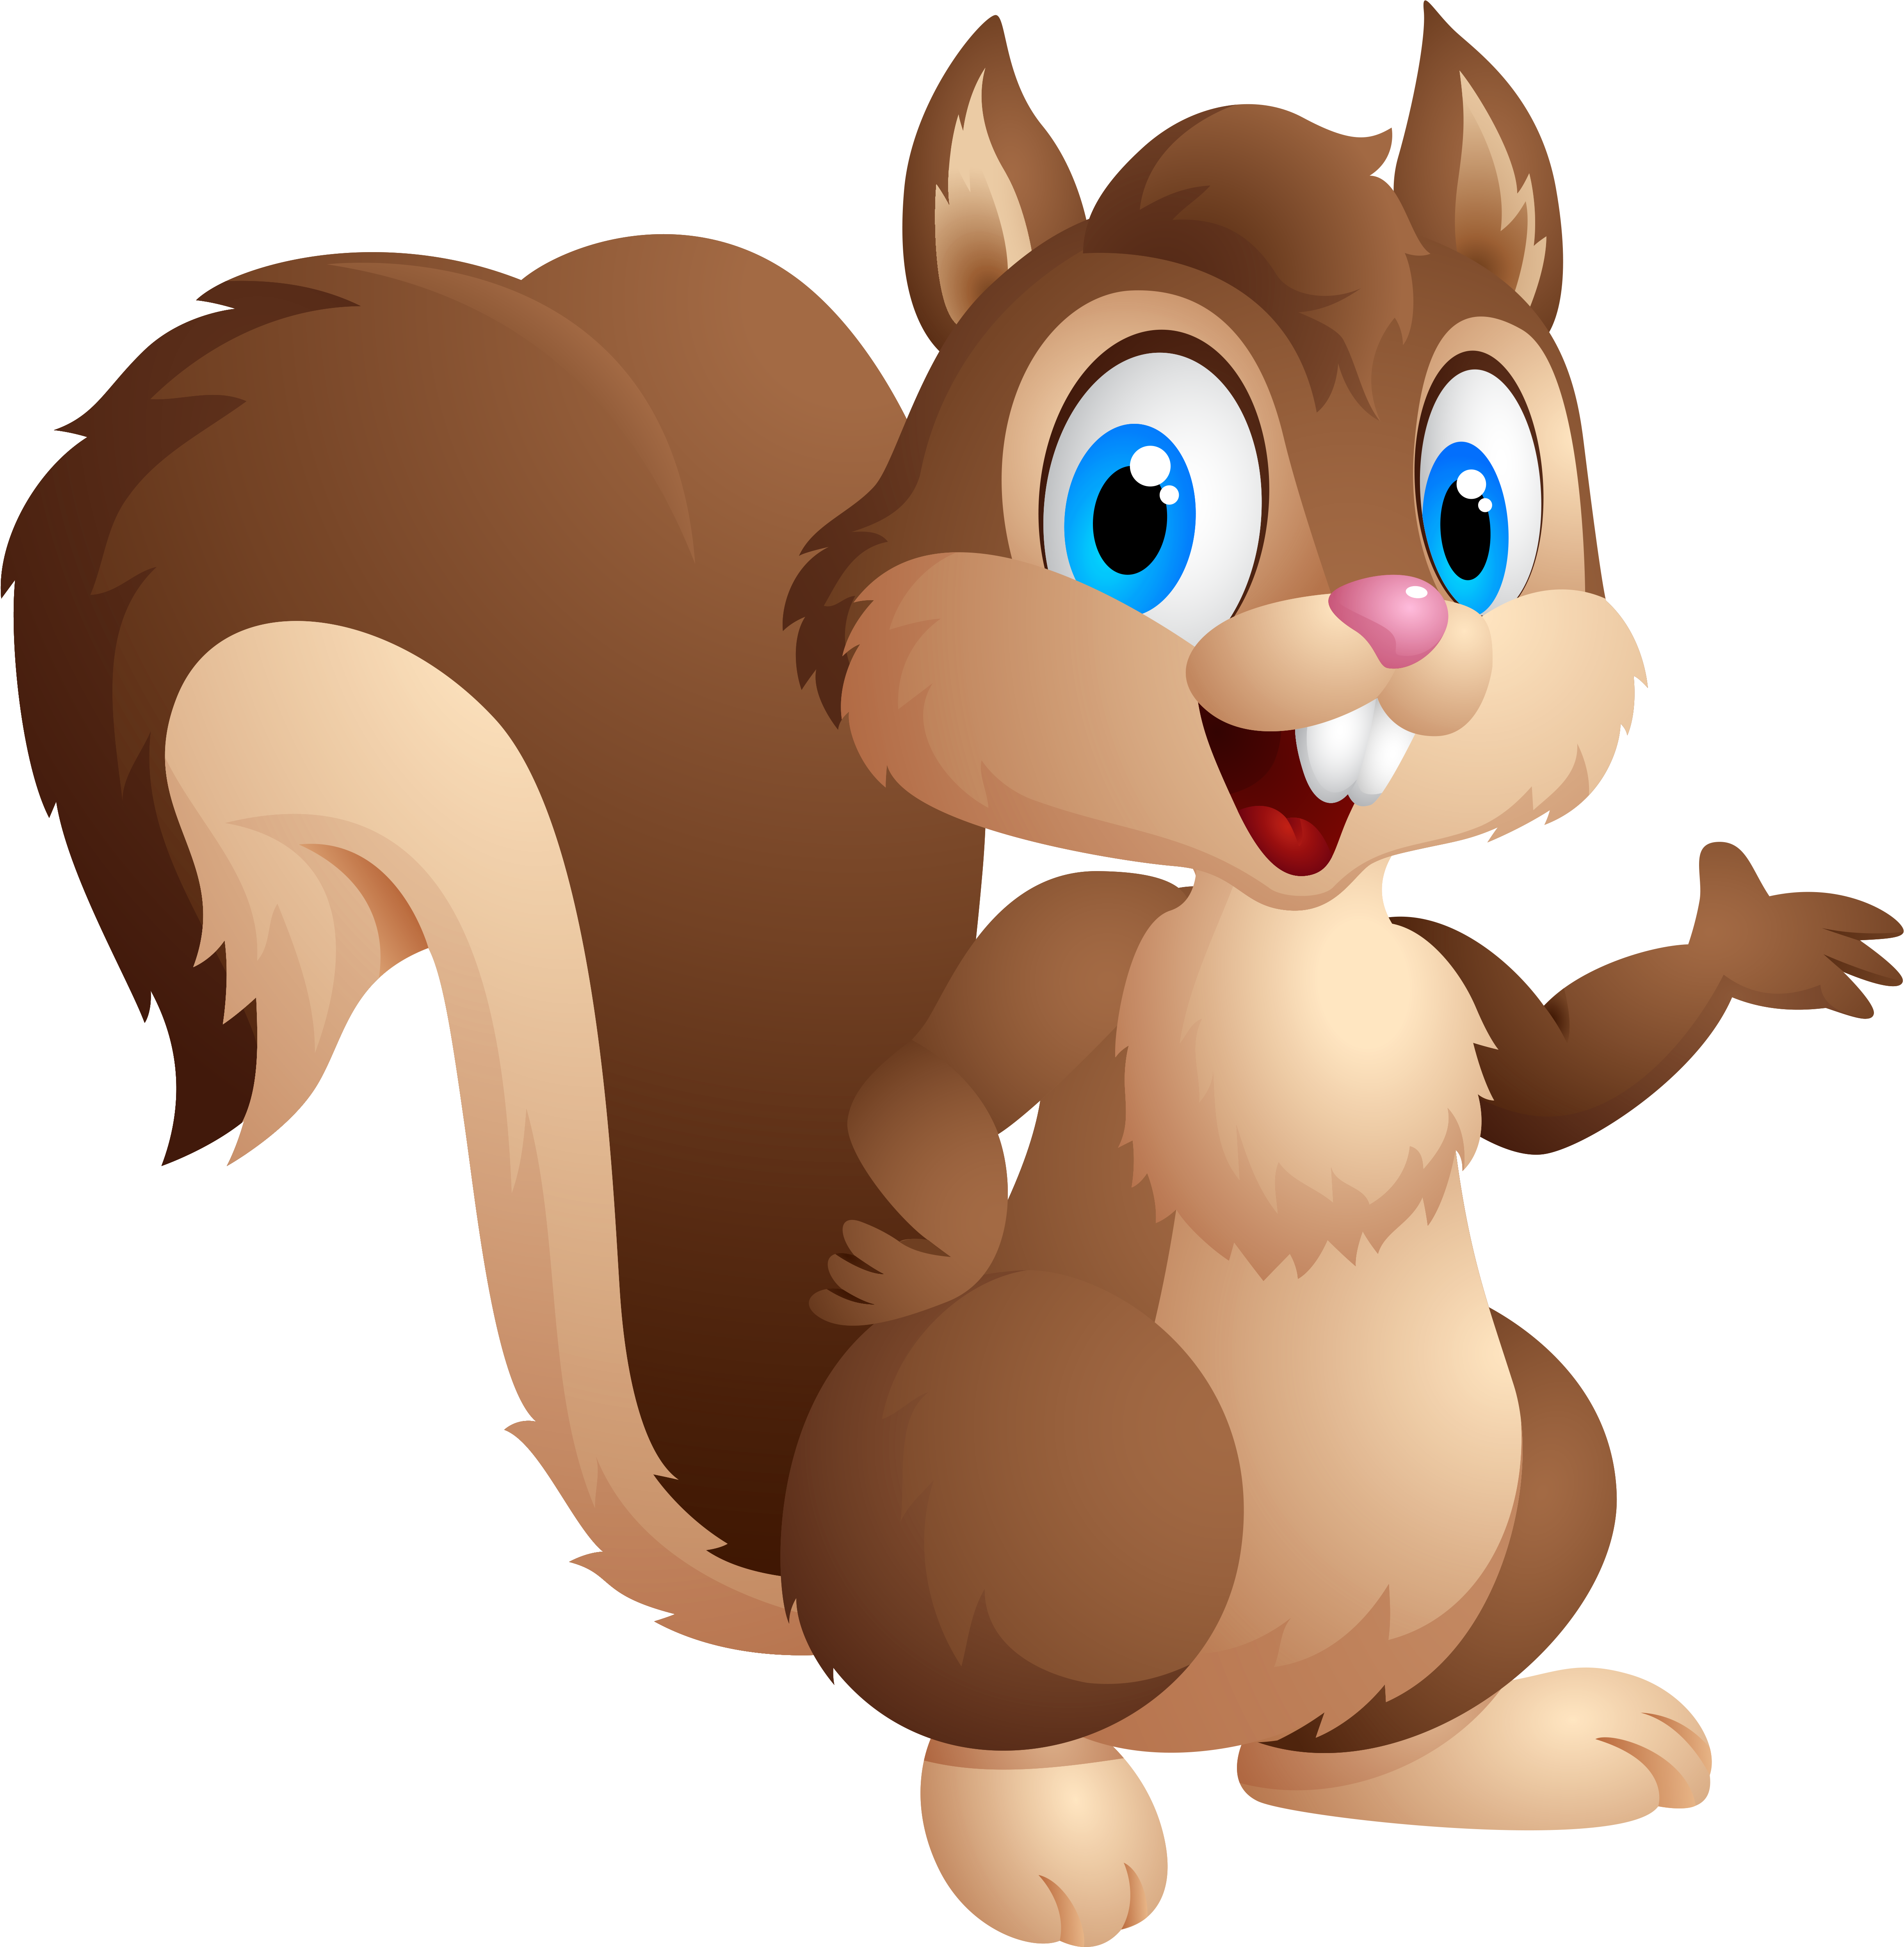 Cute - Squirrel Cartoon (4993x5086)